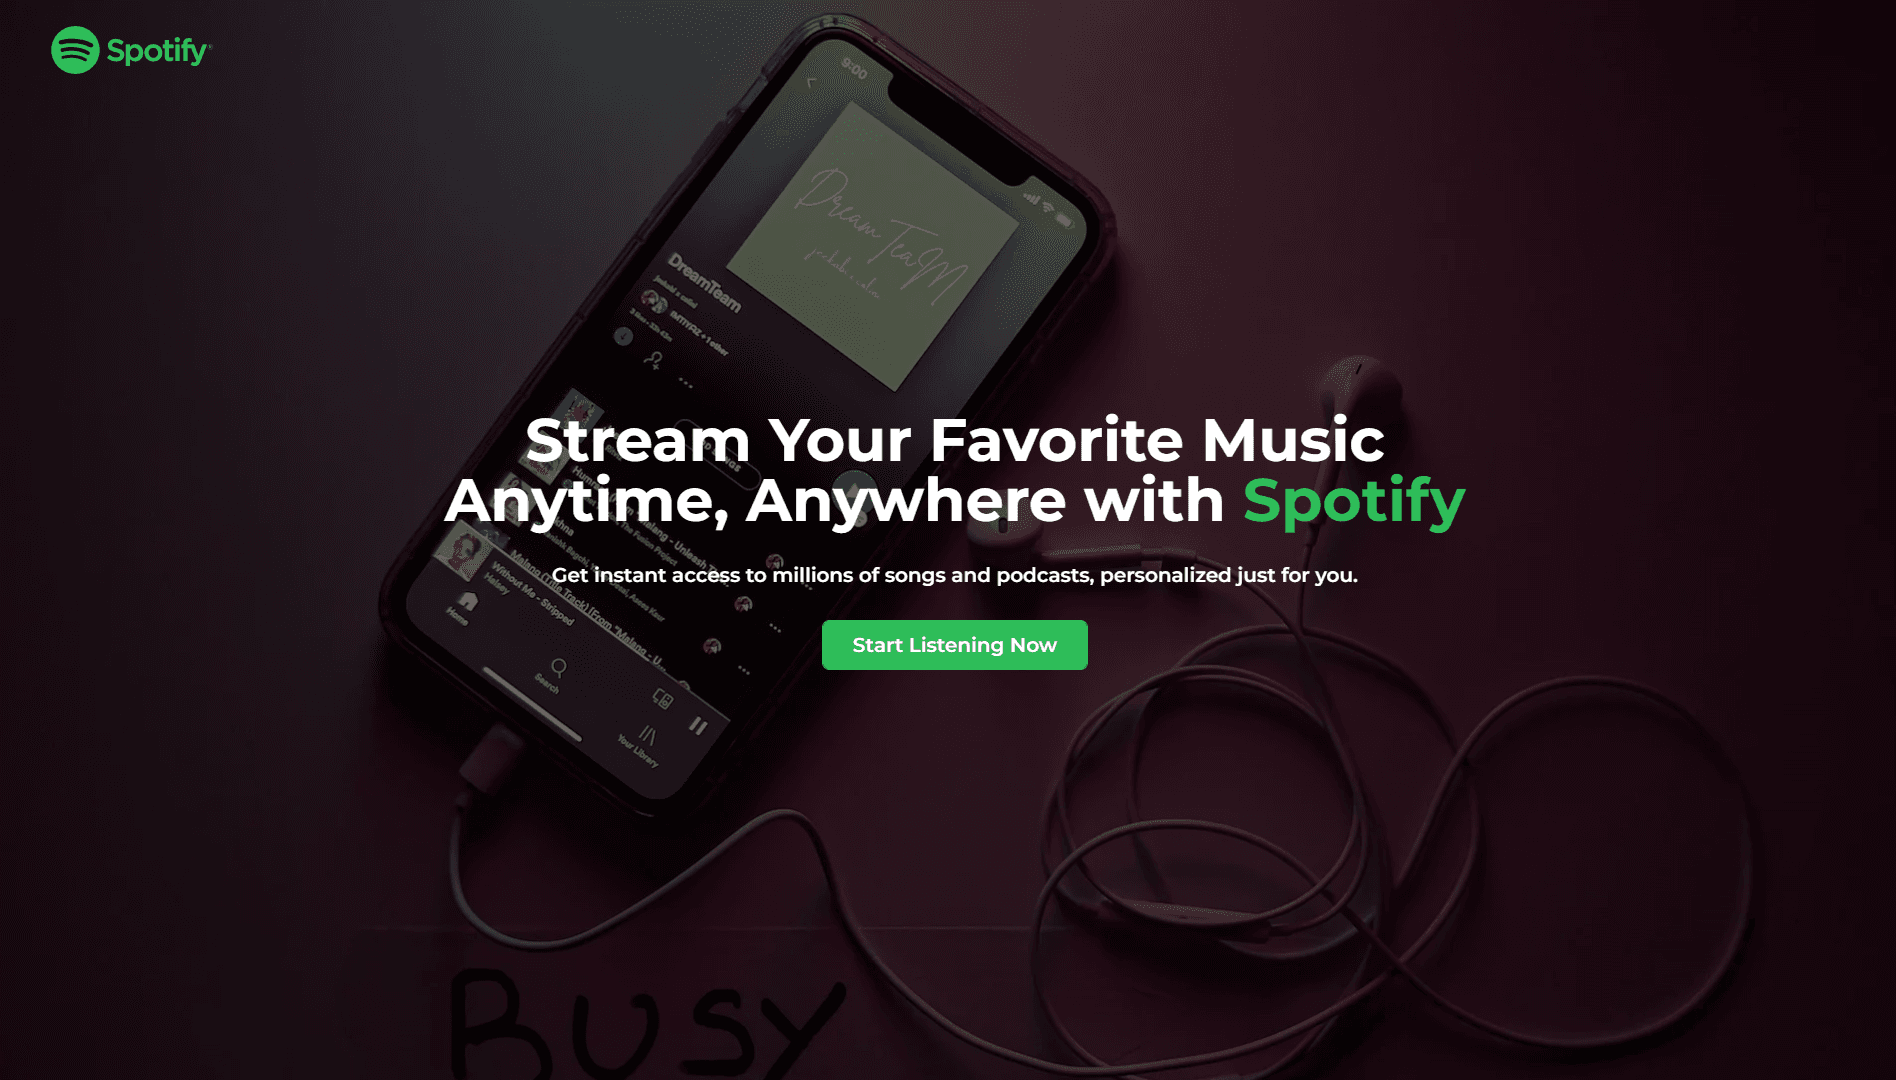 Spotify Landing Page